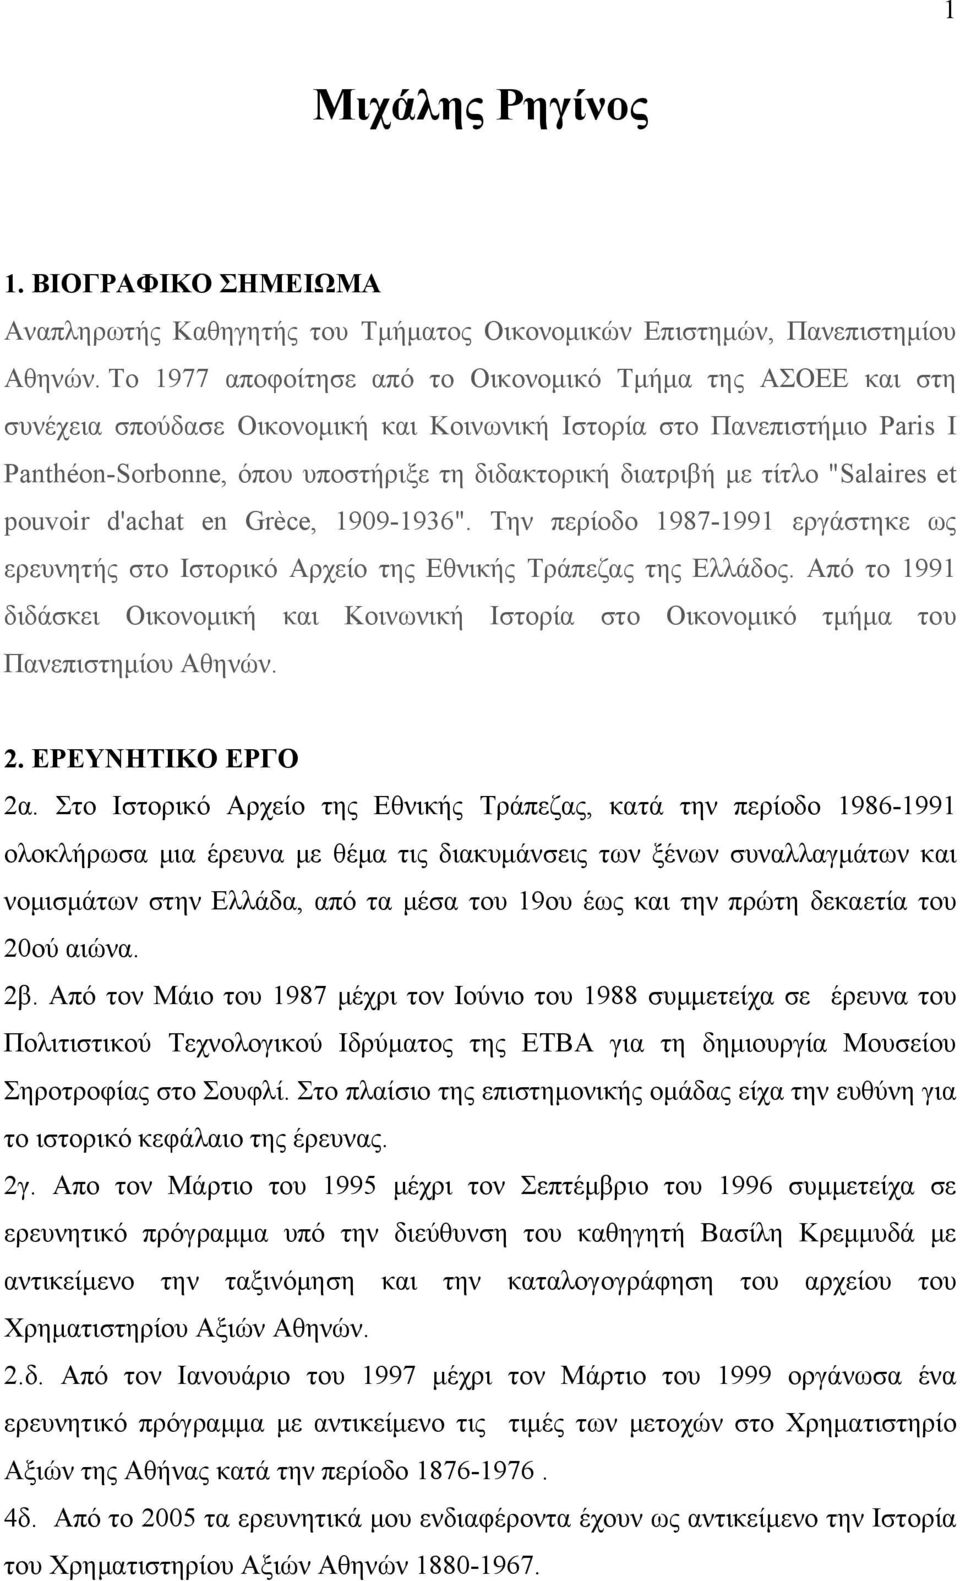 τίτλο "Salaires et pouvoir d'achat en Grèce, 1909-1936". Την περίοδο 1987-1991 εργάστηκε ως ερευνητής στο Ιστορικό Αρχείο της Εθνικής Τράπεζας της Ελλάδος.